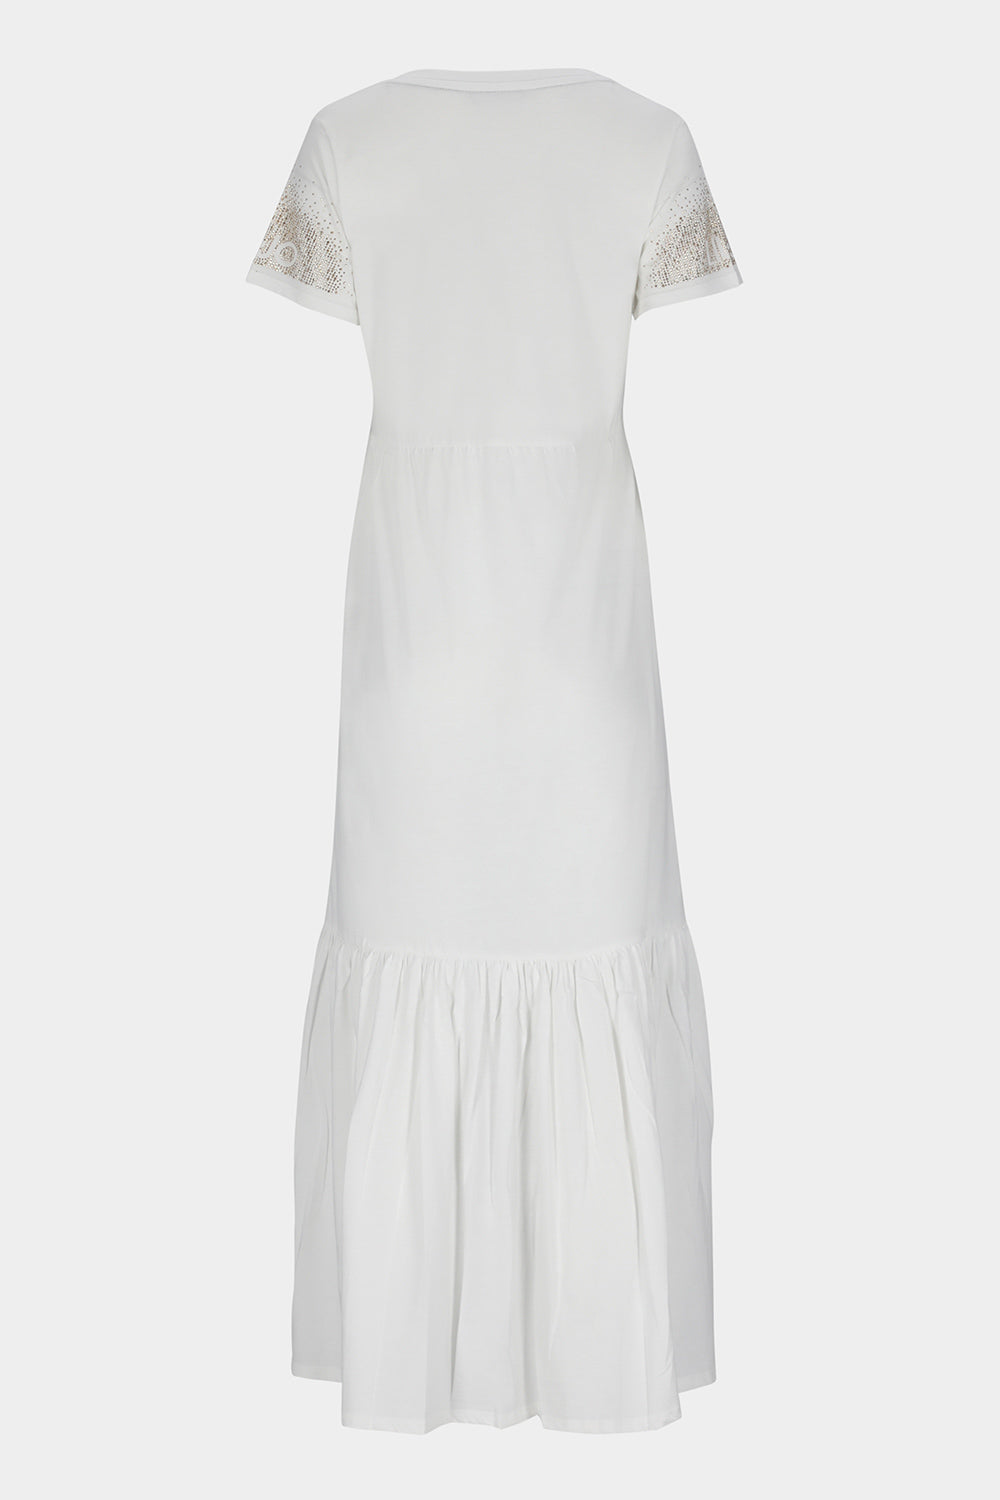 שמלת טי שירט לנשים אבני חן LIU JO Vendome online | ונדום .